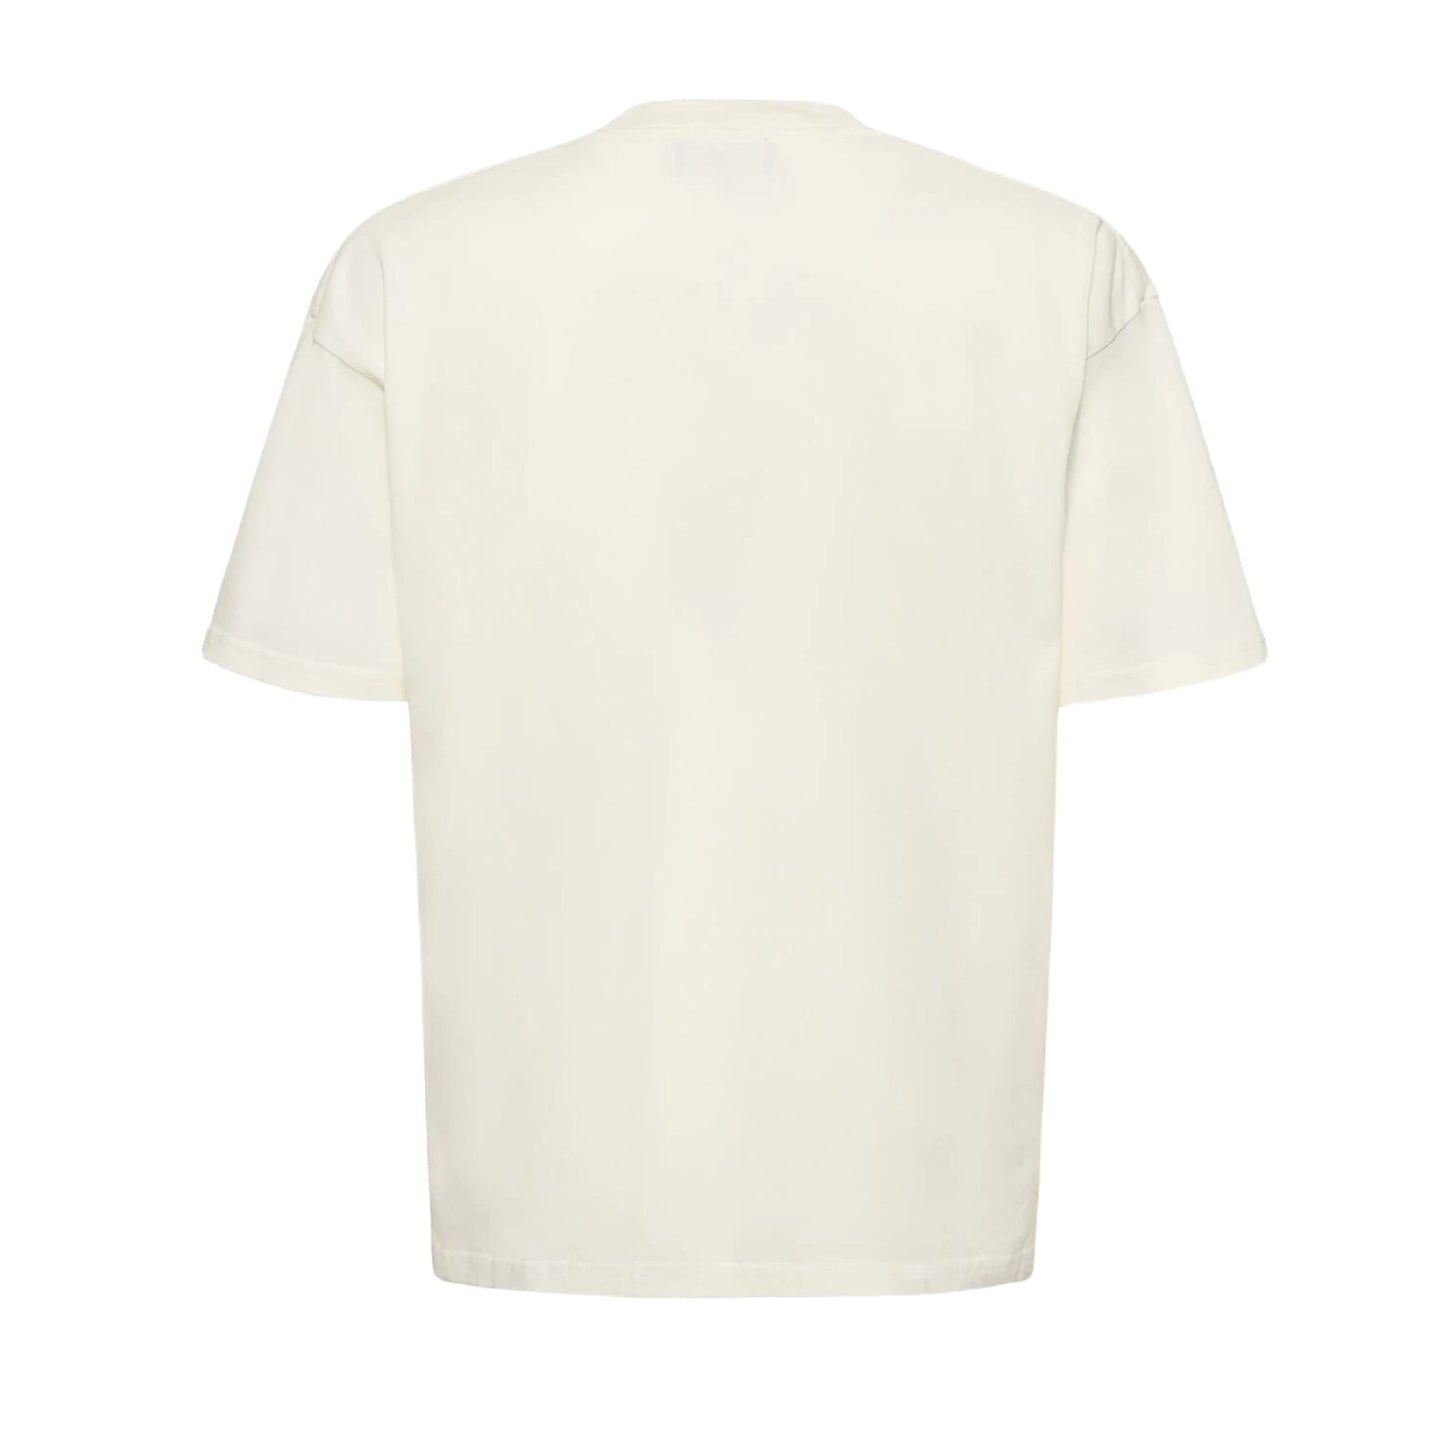 Represent Birds Of Prey T-Shirt - 72 Flat White - Escape Menswear